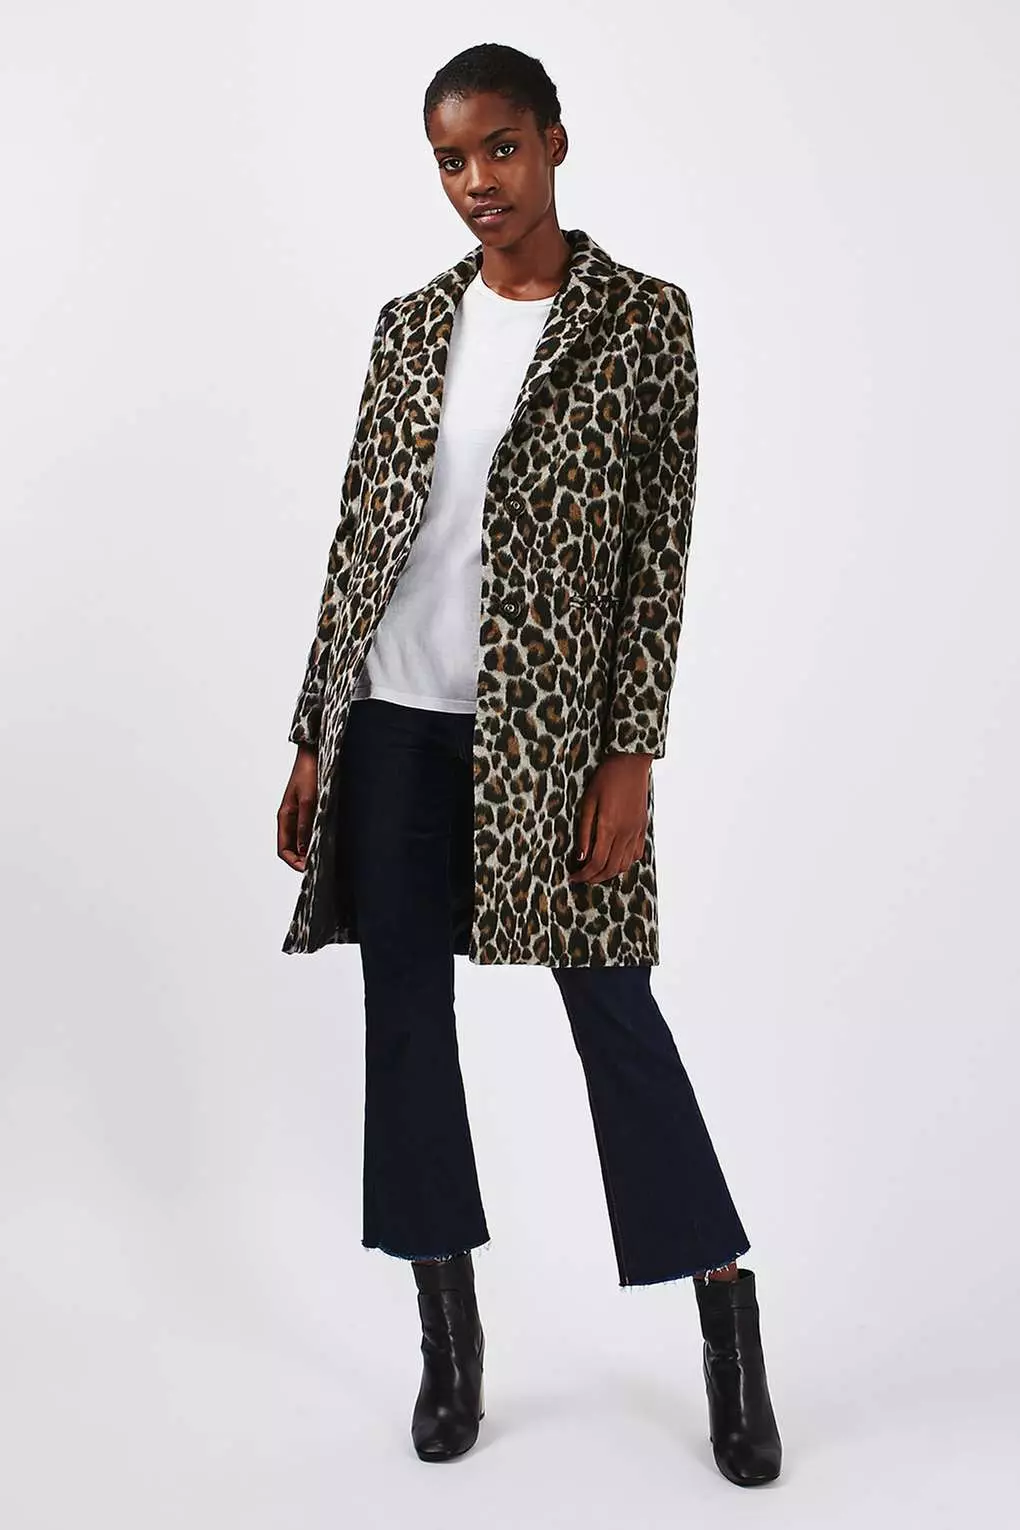 I-leopard Fur Coat (iifoto ezingama-46): Iimodeli ezinombala wengwe kunye noboya bengwe 330_21